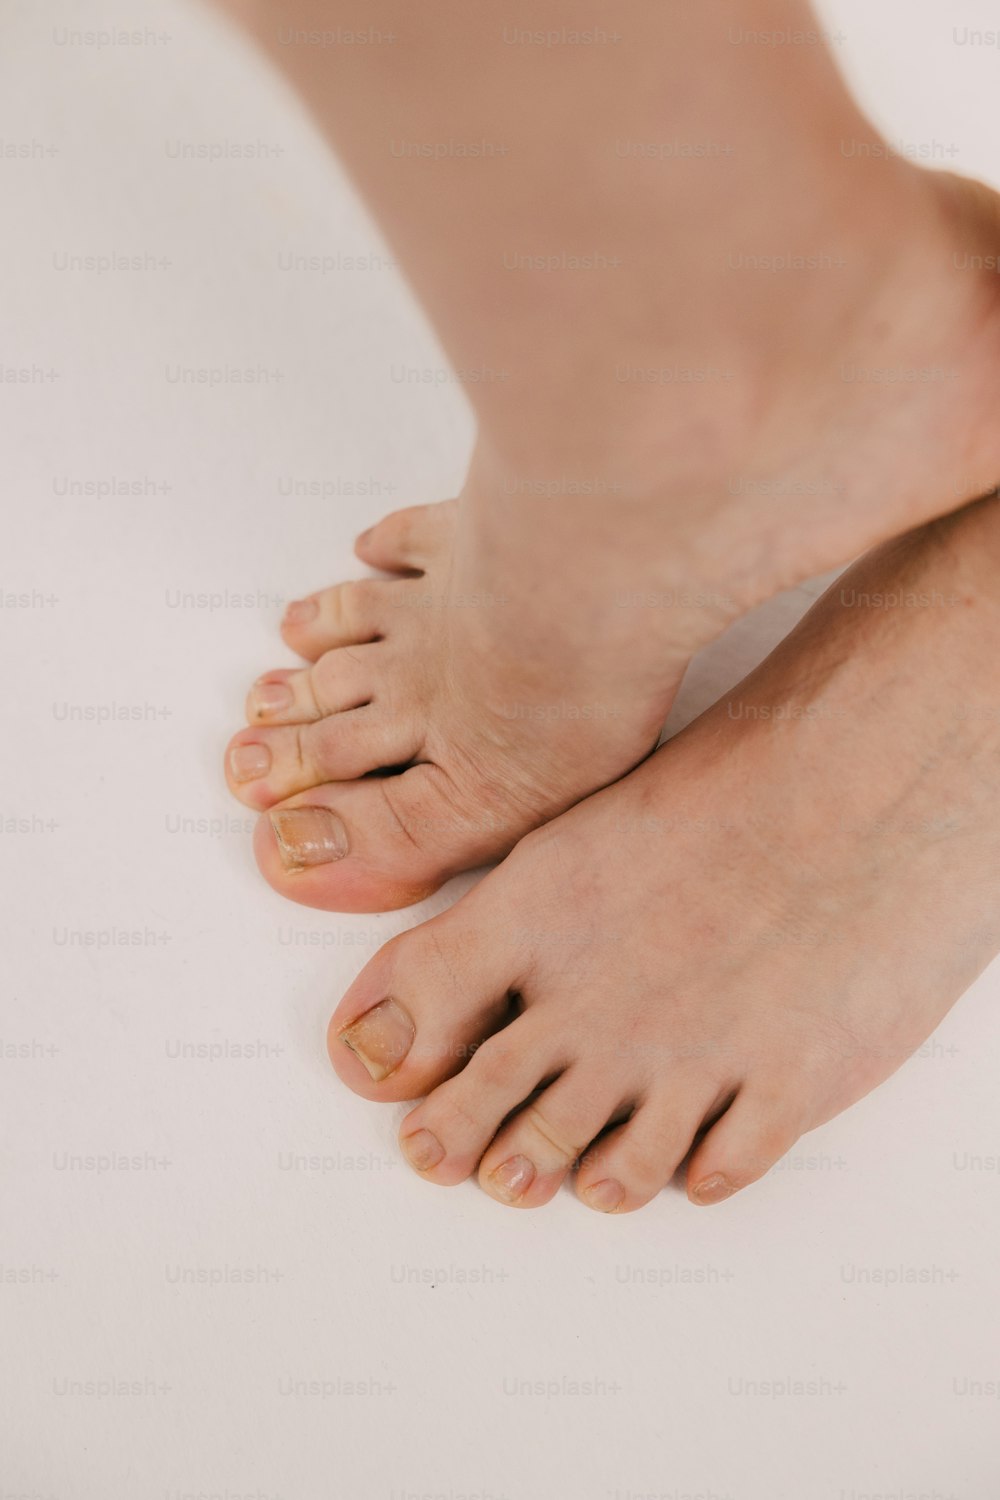 um close up dos pés descalços de uma pessoa em uma superfície branca